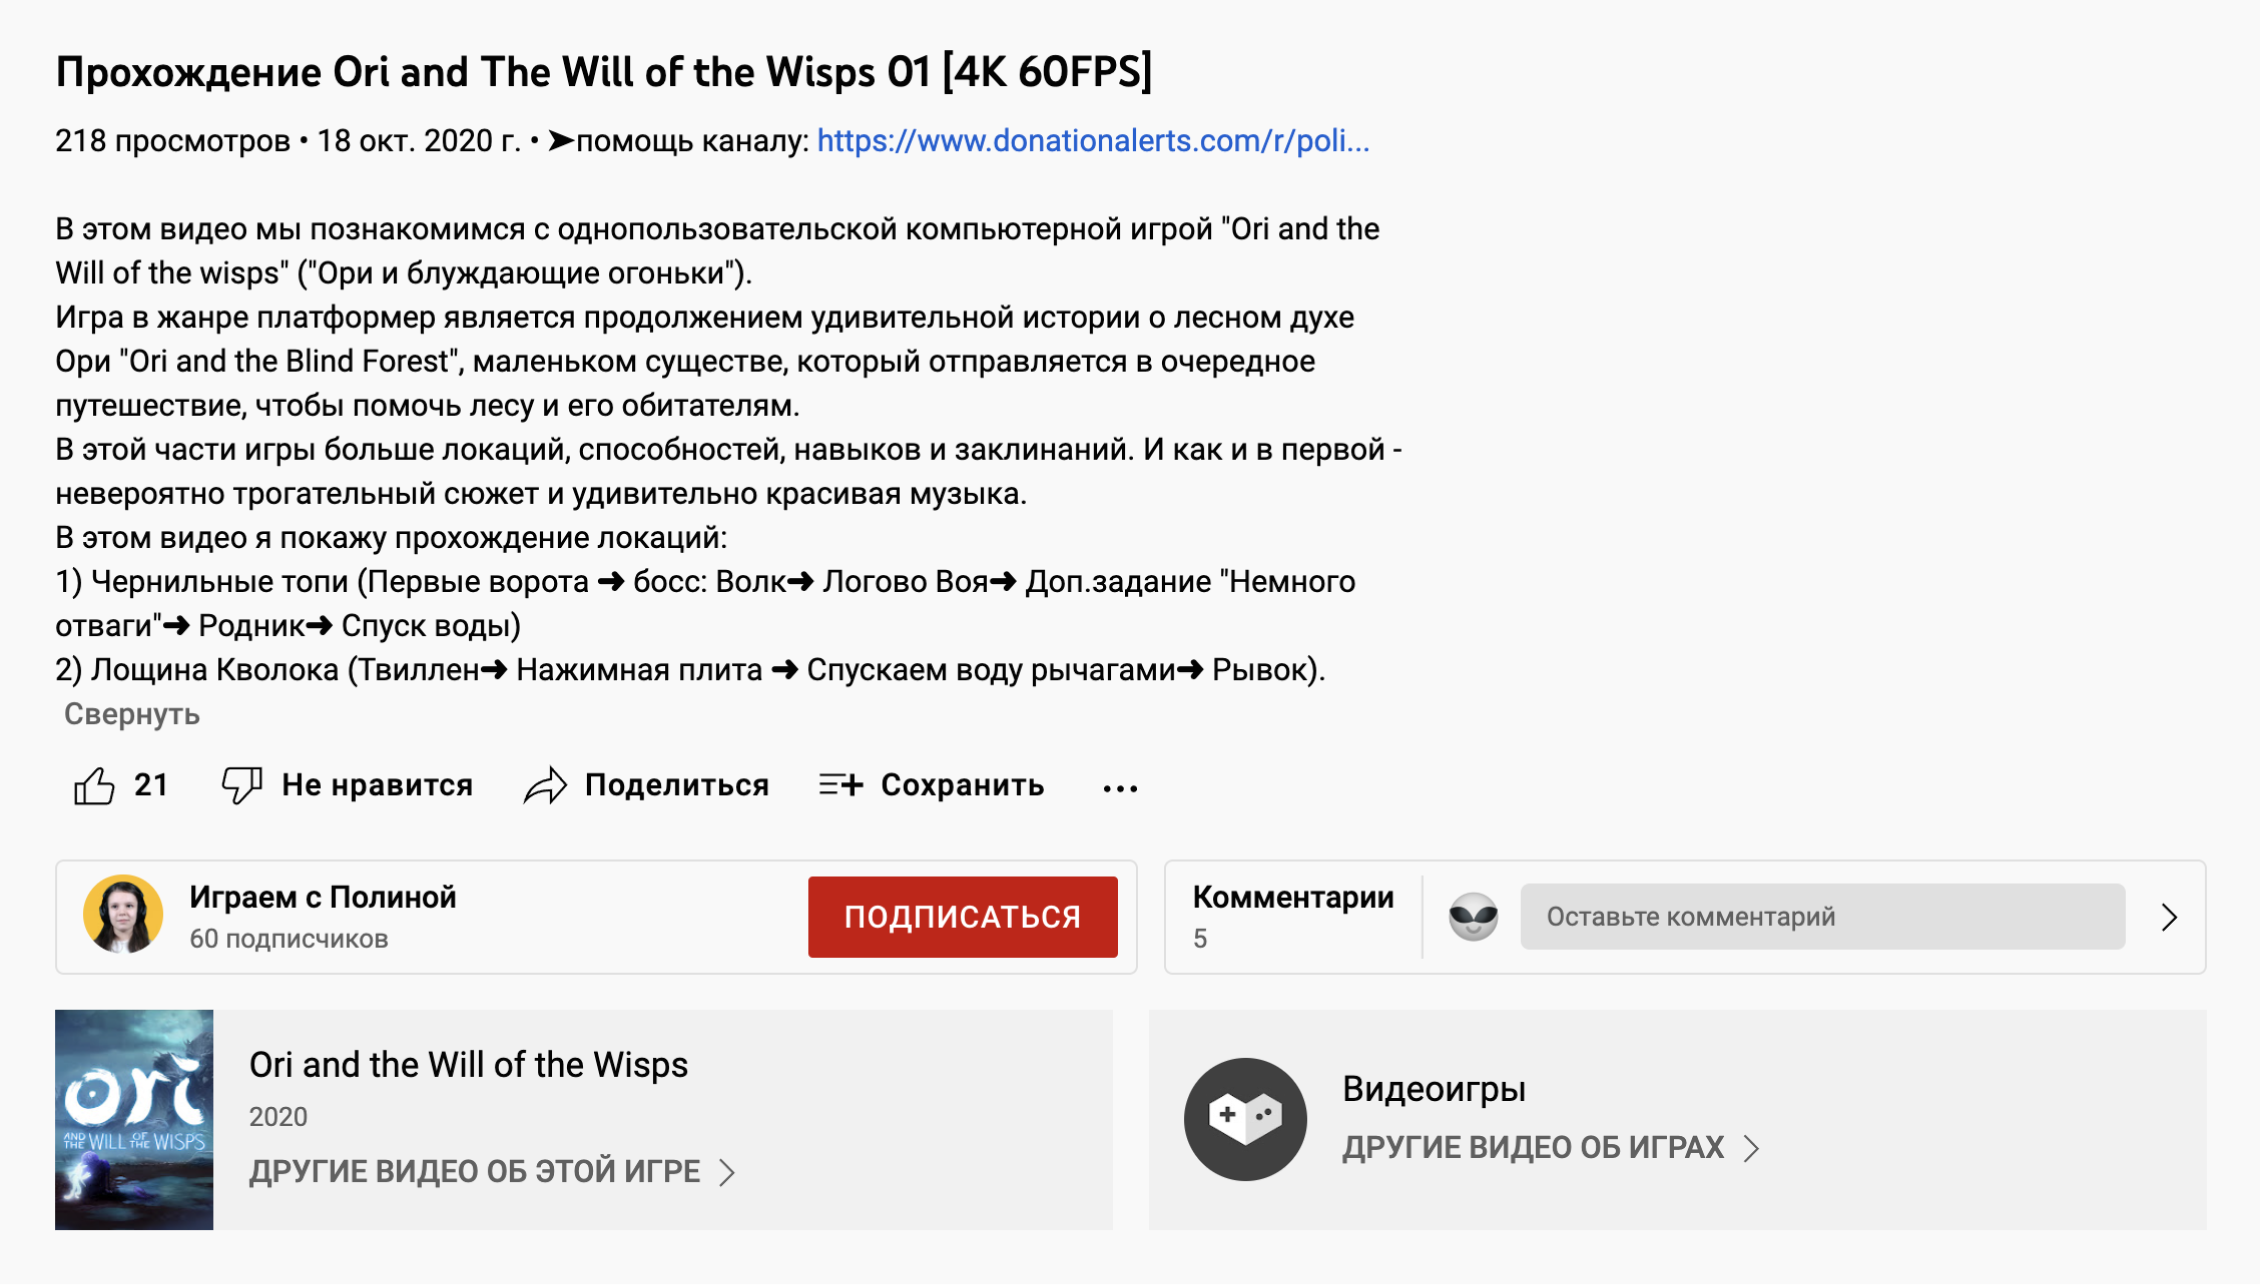 Наше описание видео к игре Ori and the Will of the wisps: рассказываем, что это за игра и какие локации будут пройдены именно в этом ролике